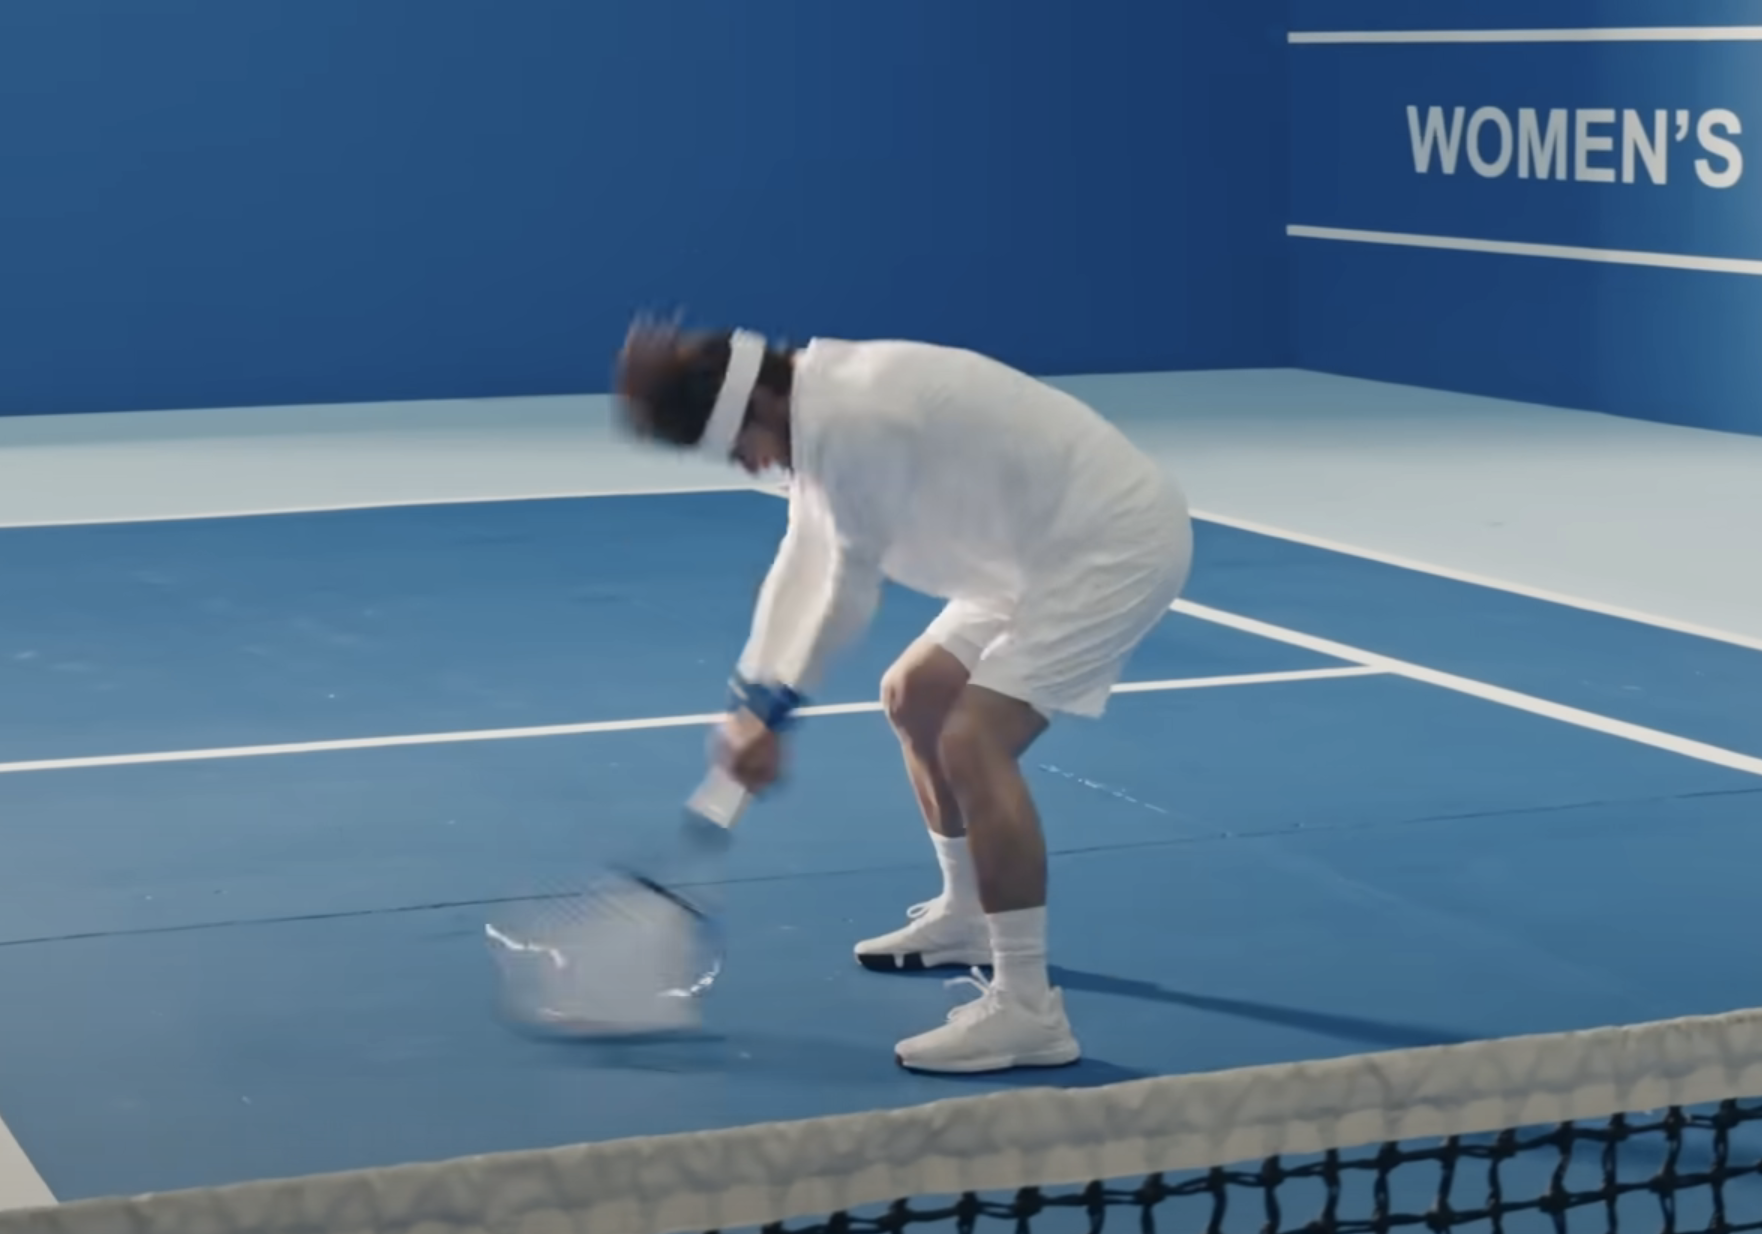 A man trashing a tennis racket